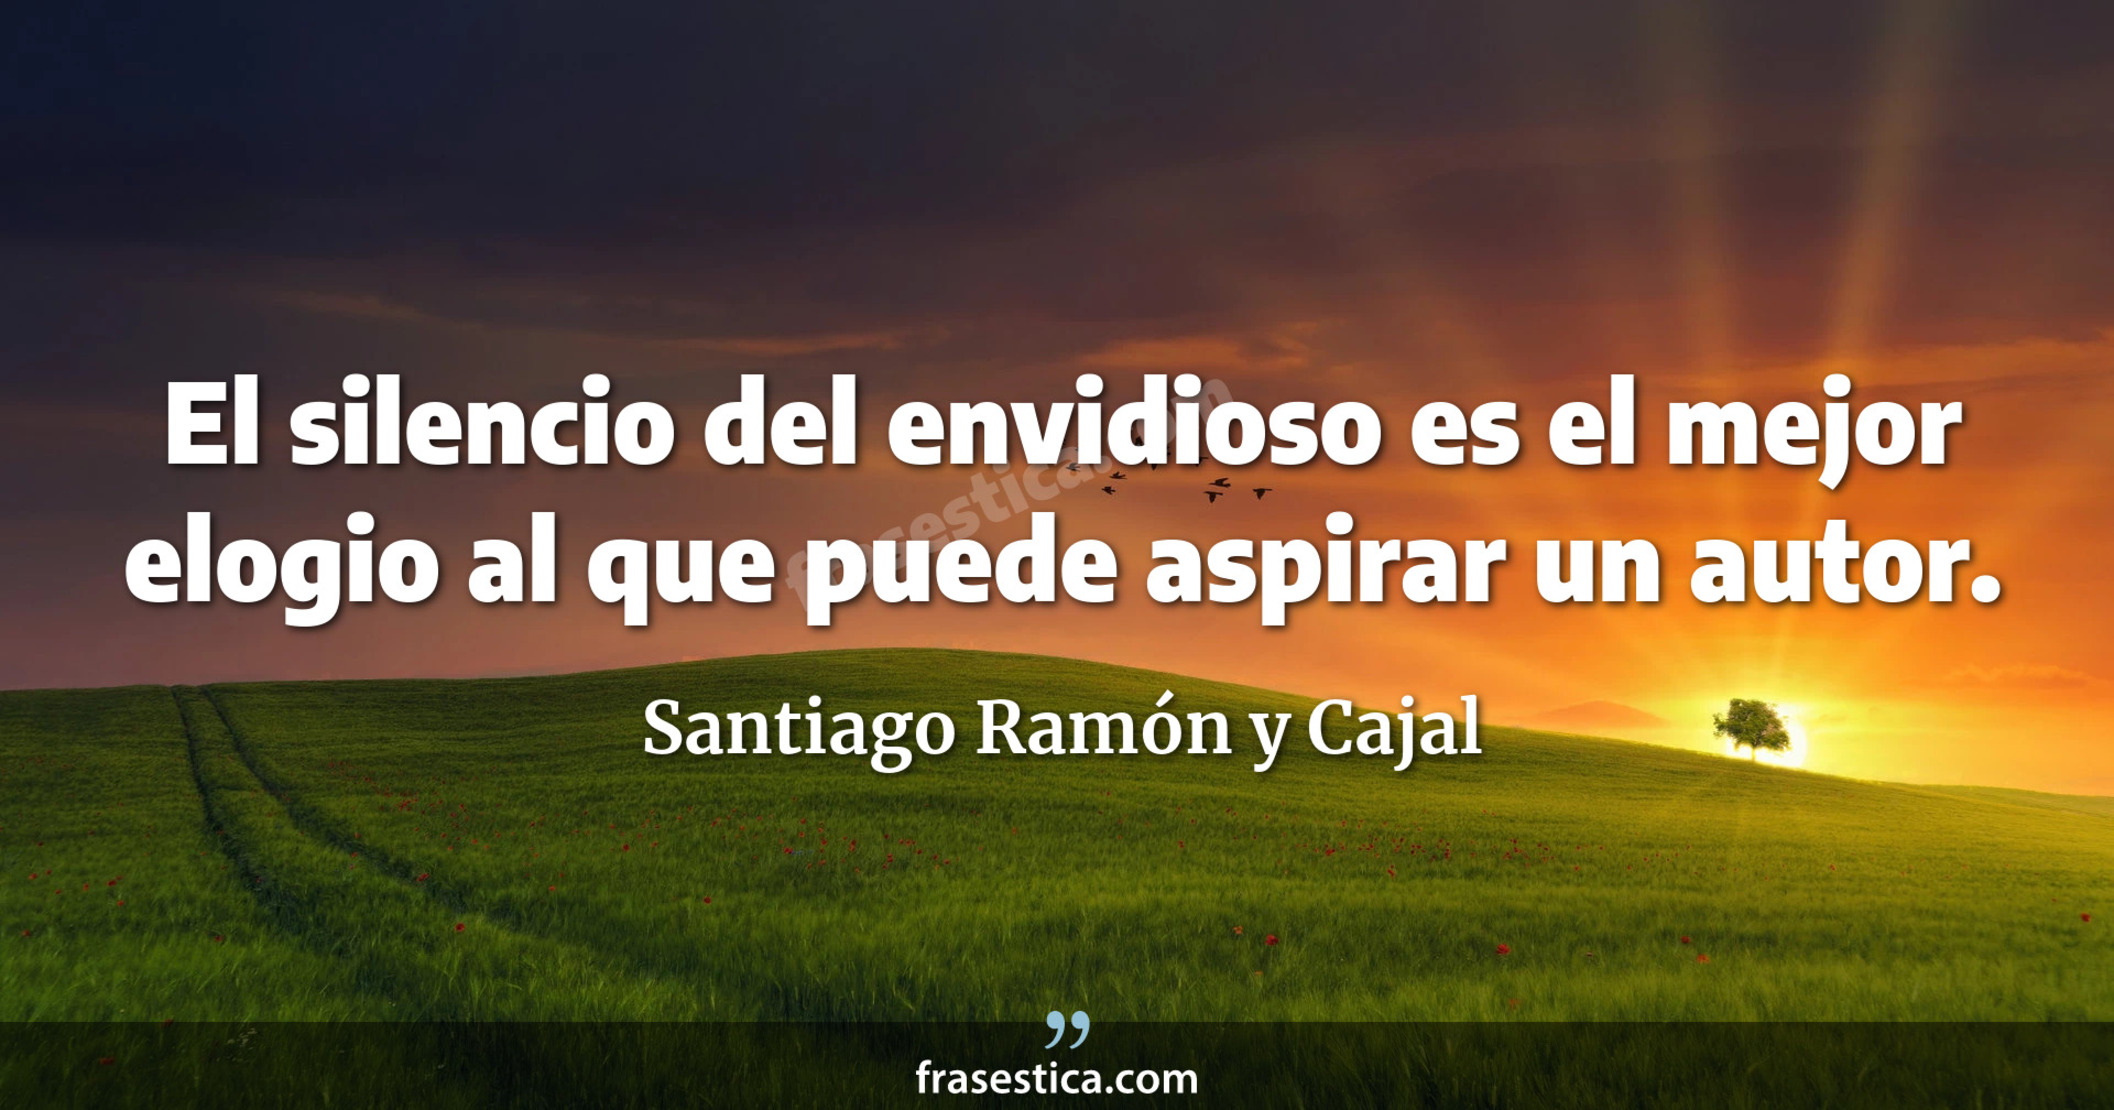 El silencio del envidioso es el mejor elogio al que puede aspirar un autor. - Santiago Ramón y Cajal